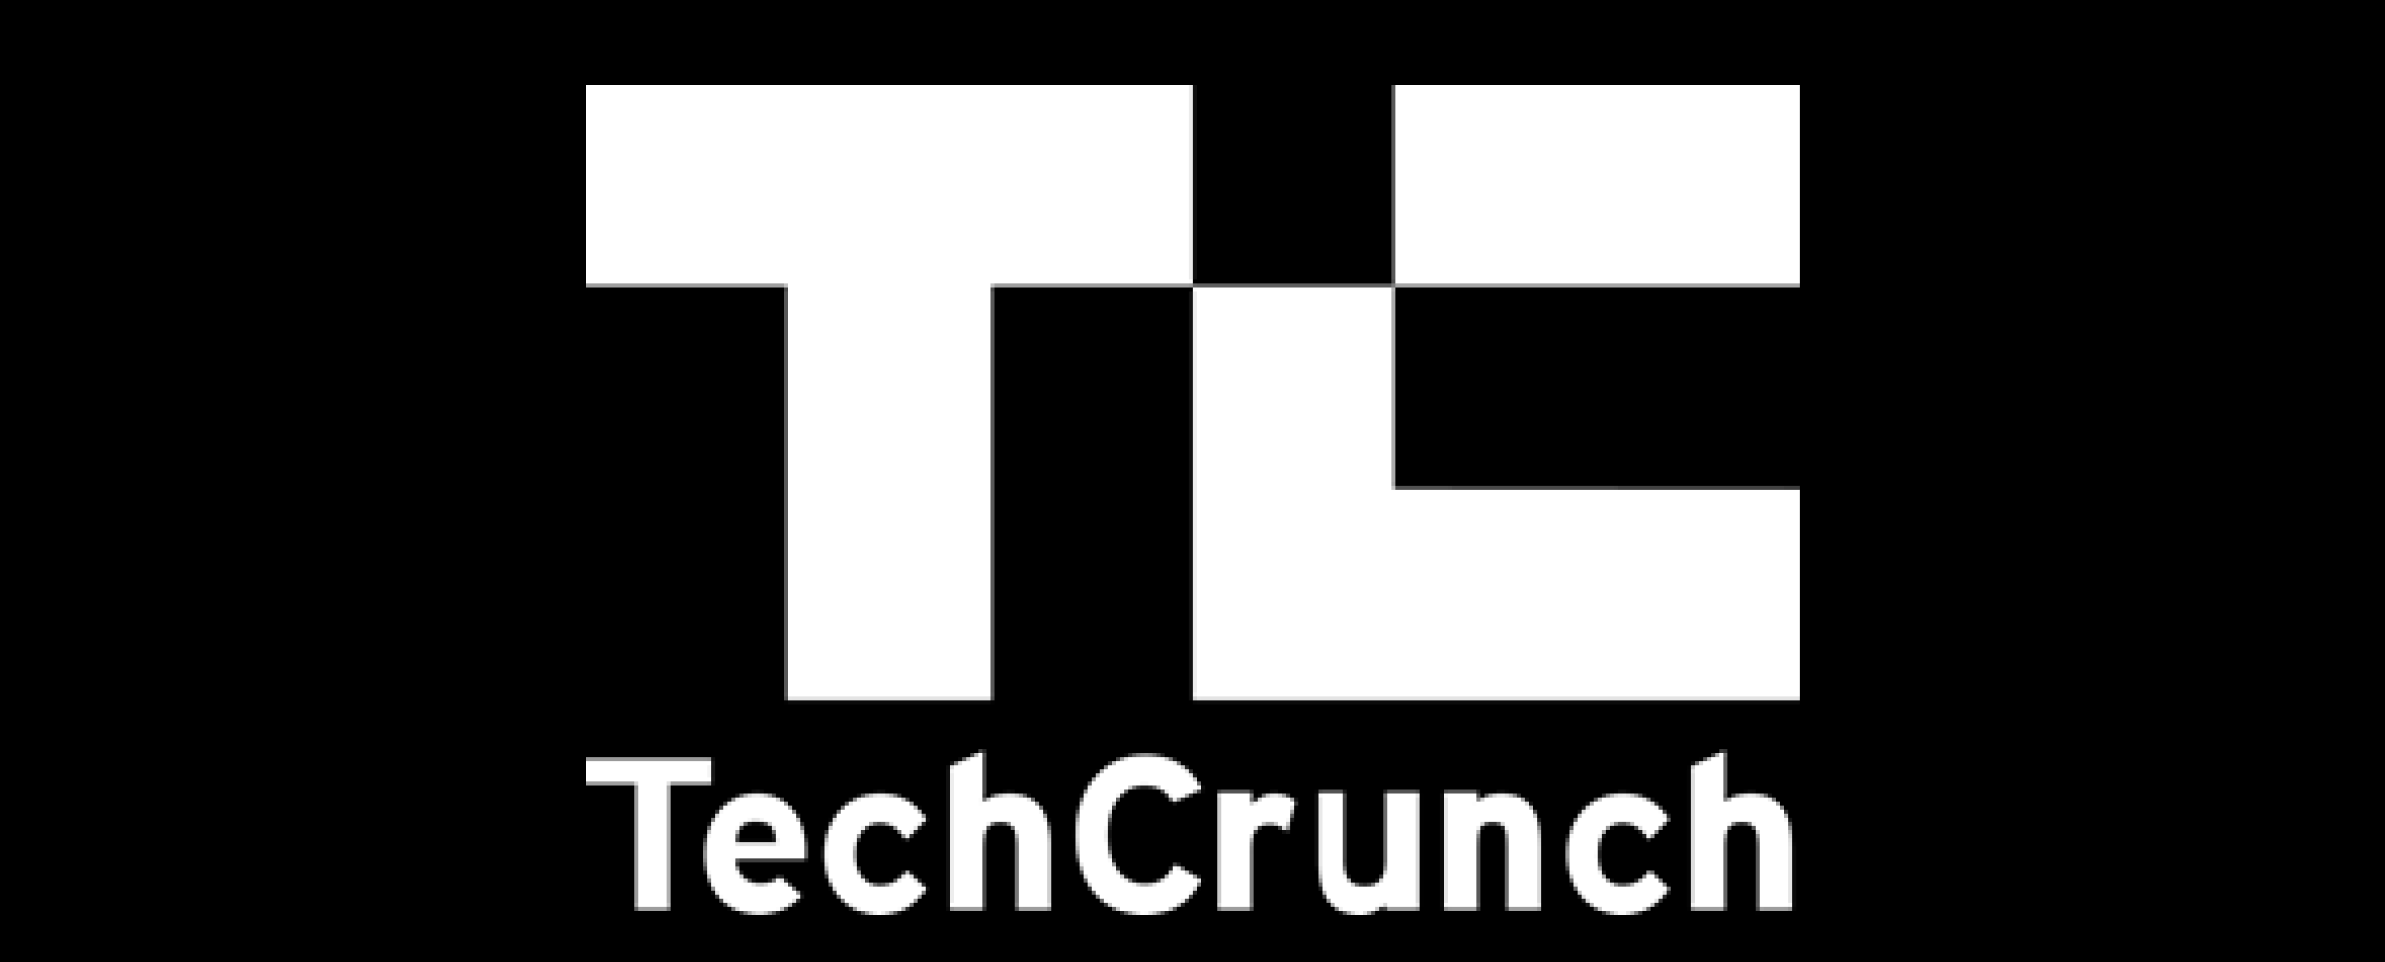 Tech crunch